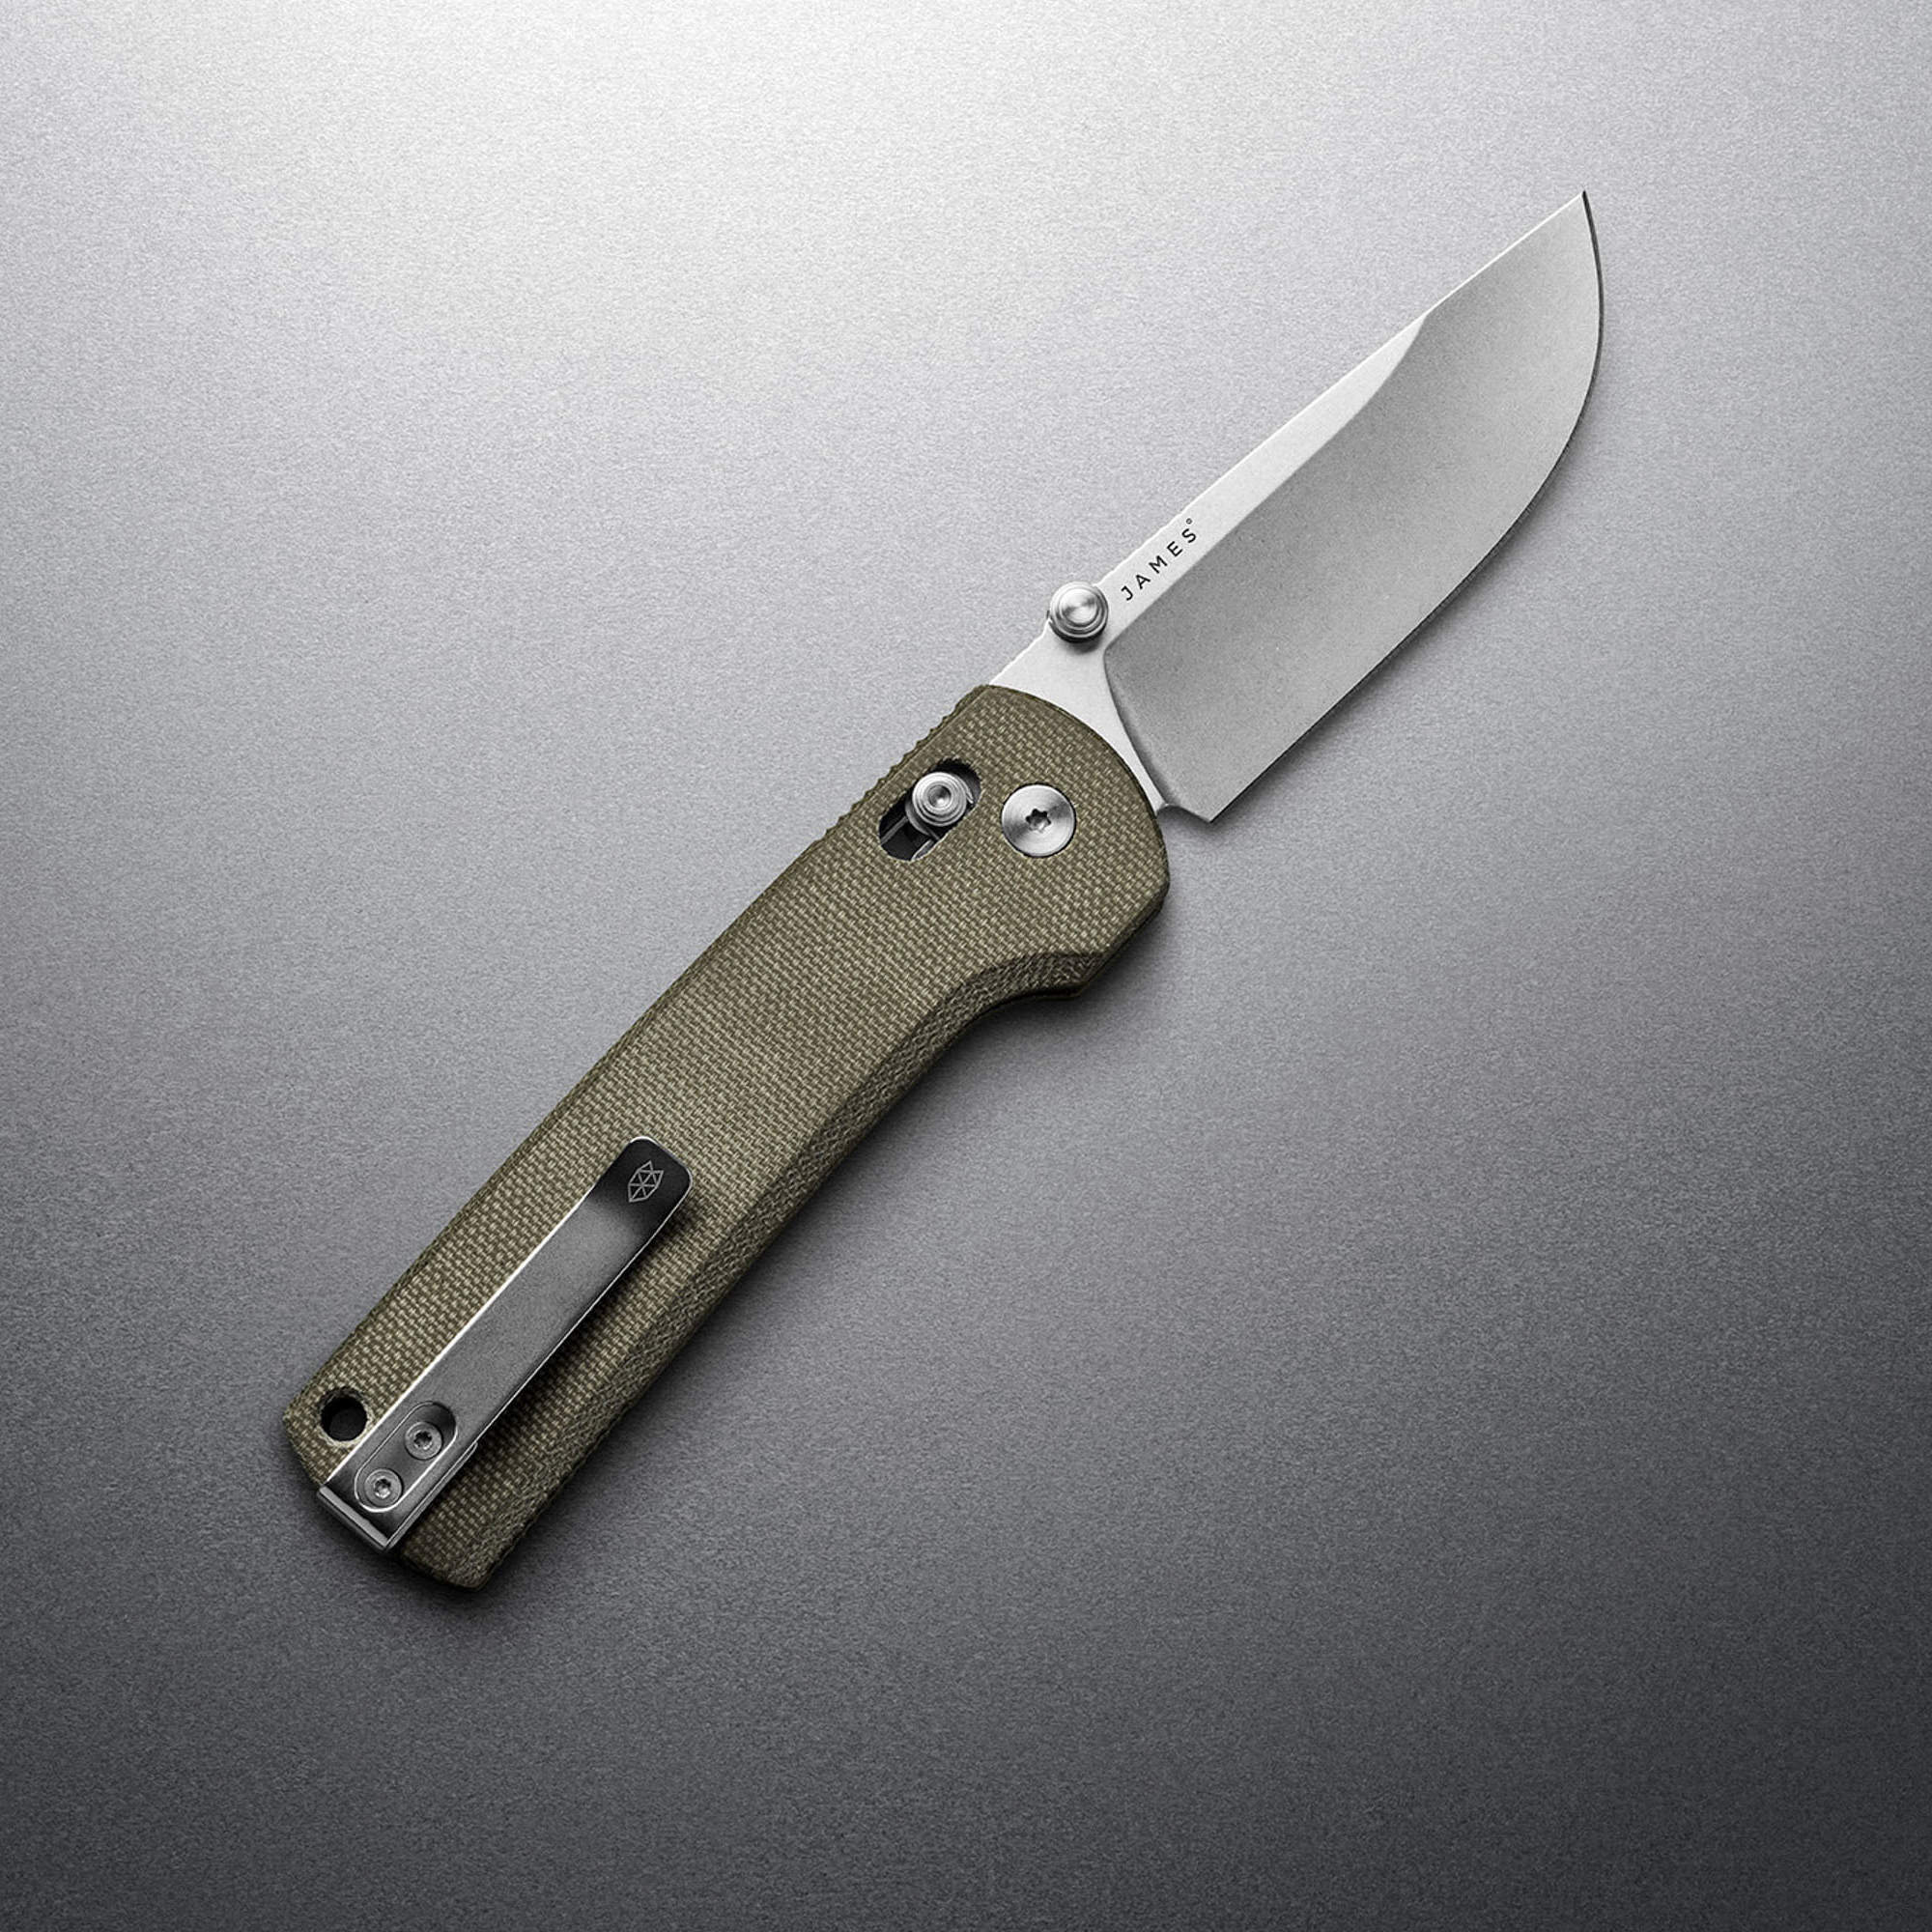 https://silodrome.com/wp-content/uploads/2022/12/The-Kline-Pocket-Knife-By-James-1.jpeg